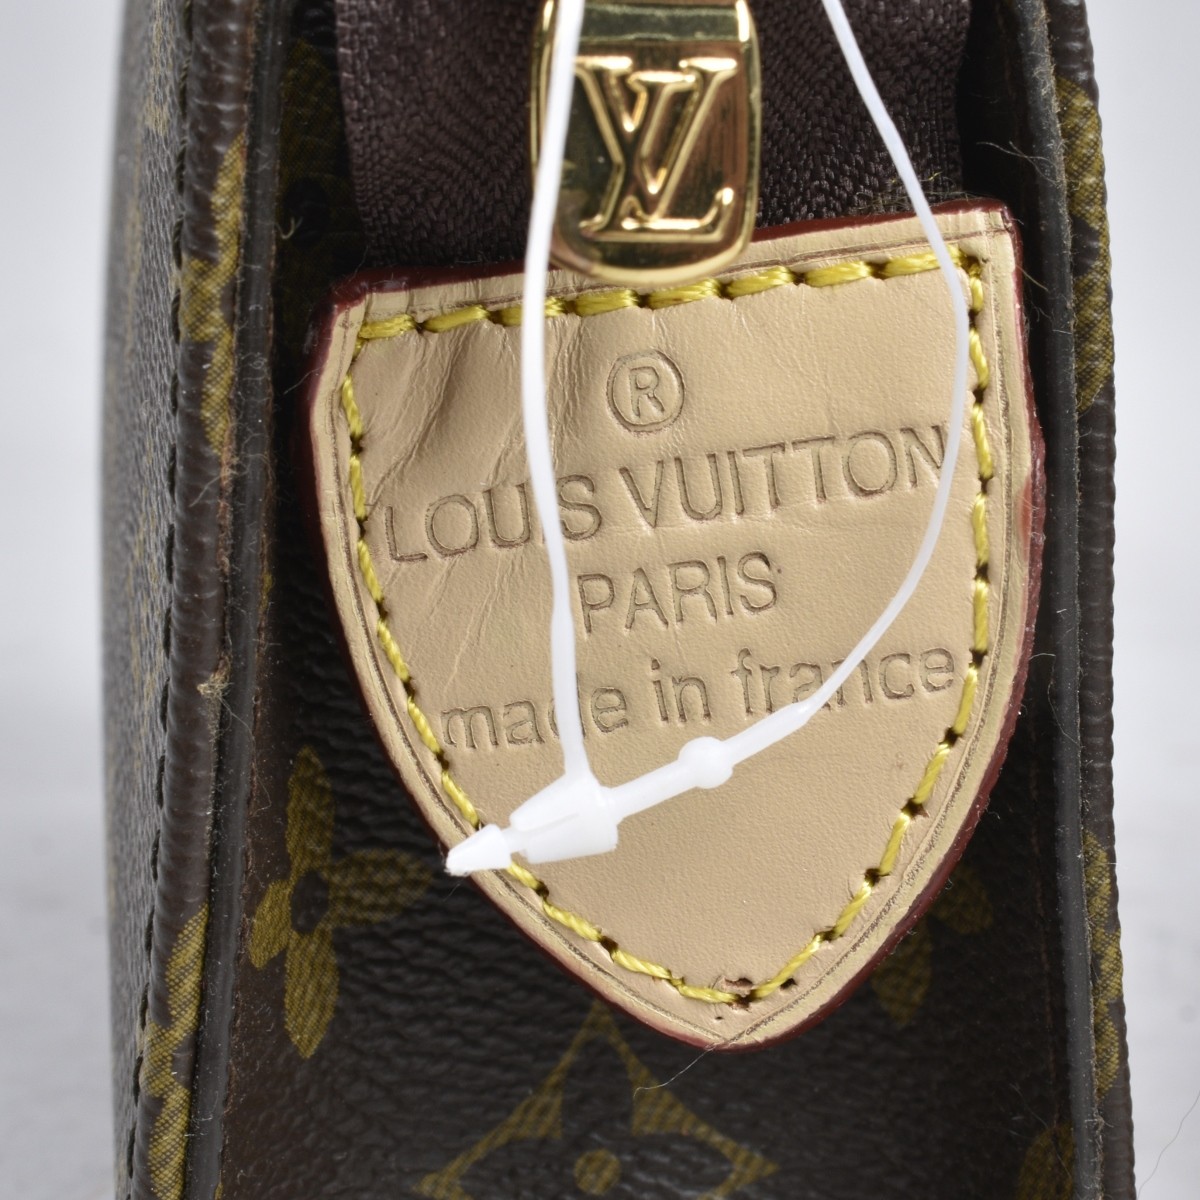 REPLICA Louis Vuitton Handbags